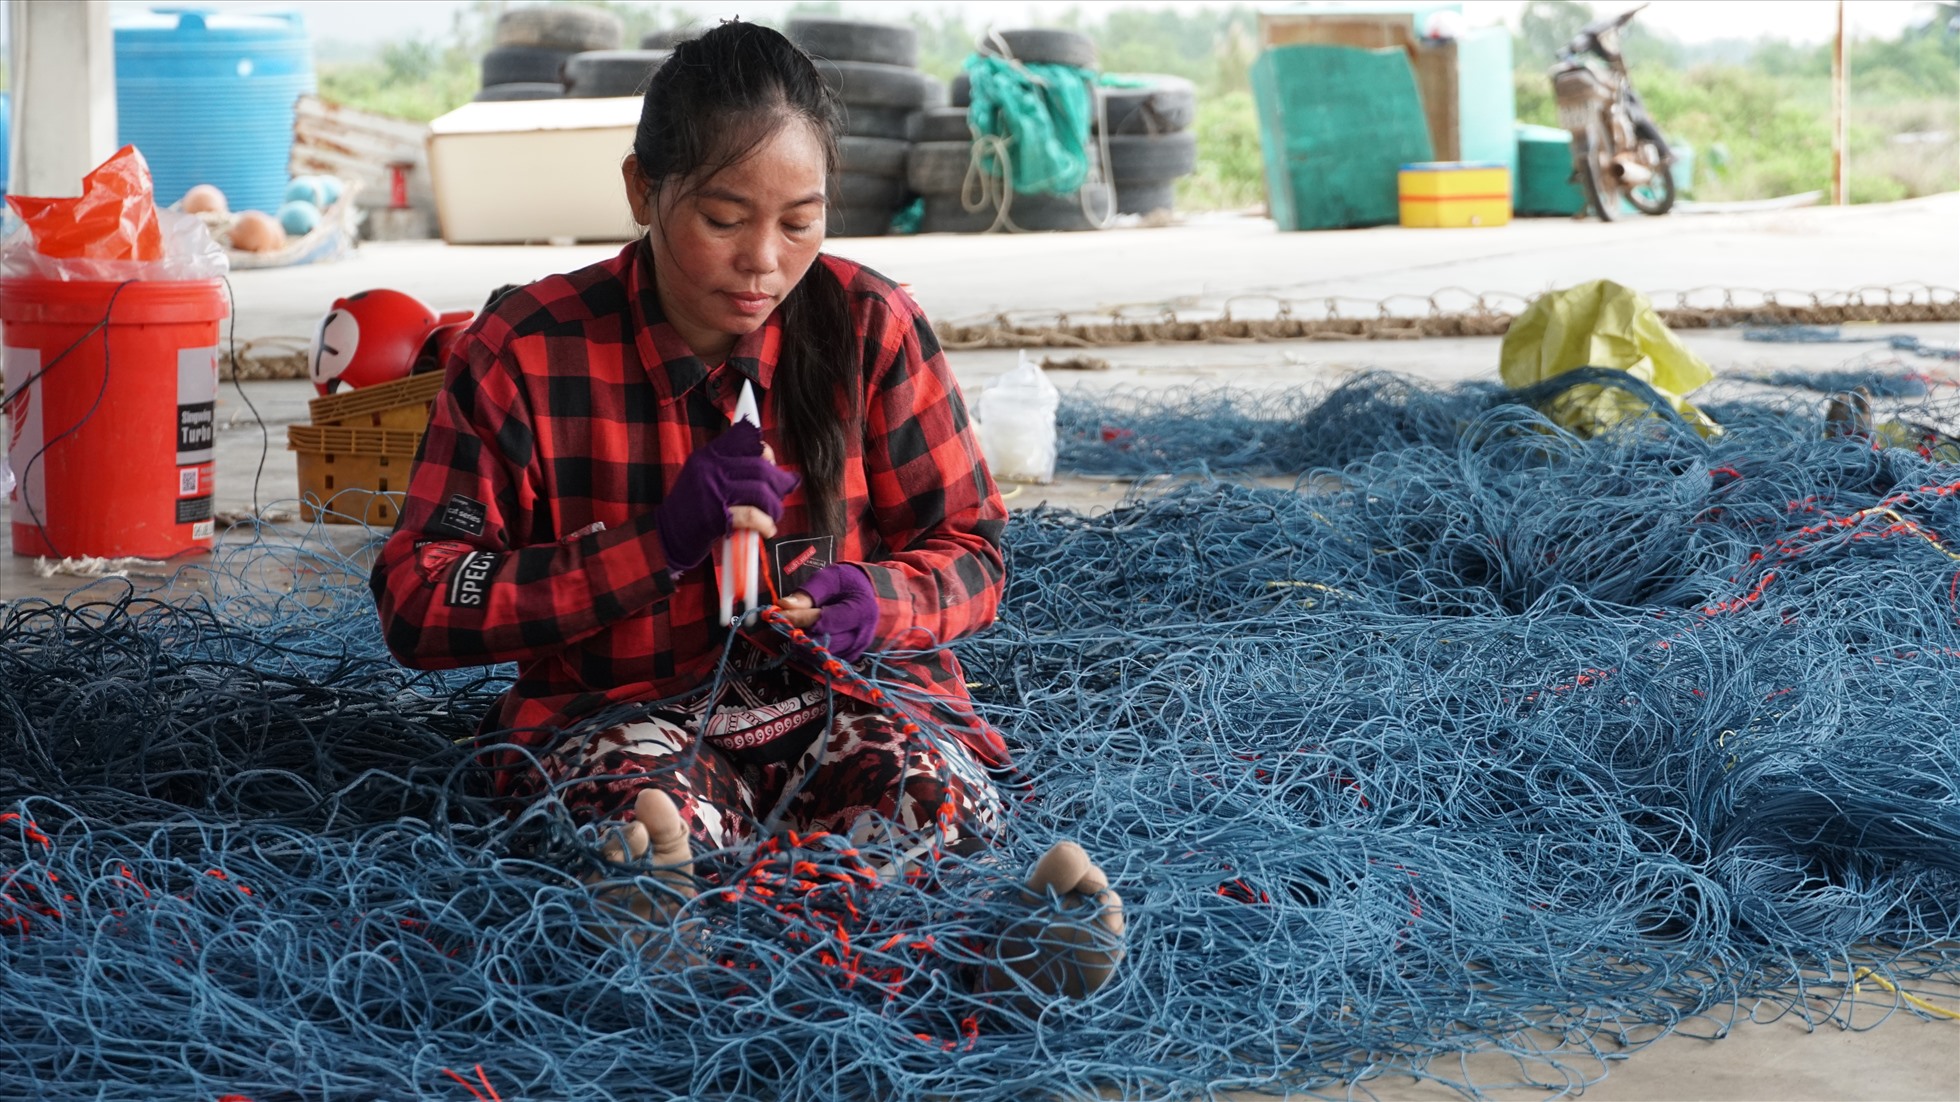 Công việc đan, vá lưới thuê đã tạo việc làm cho chị em phụ nữ trên địa bàn. Ảnh: Bích Ngọc